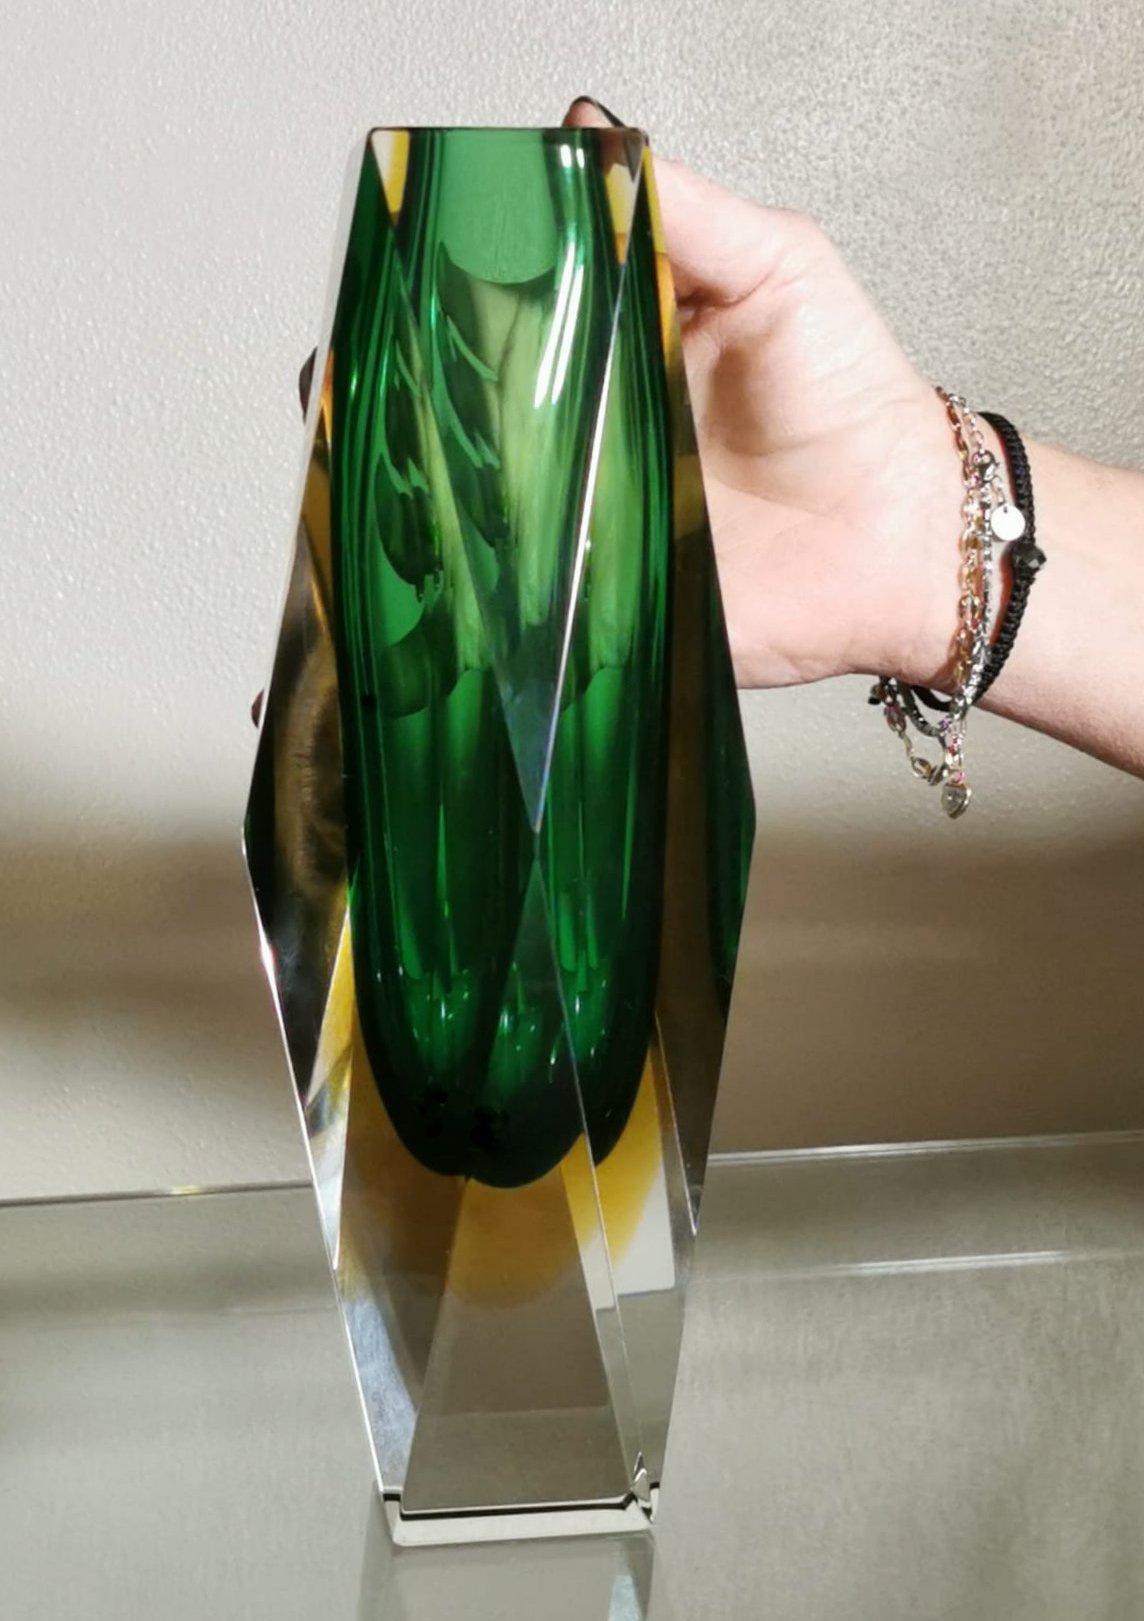 Mandruzzato Murano Glass Vase 